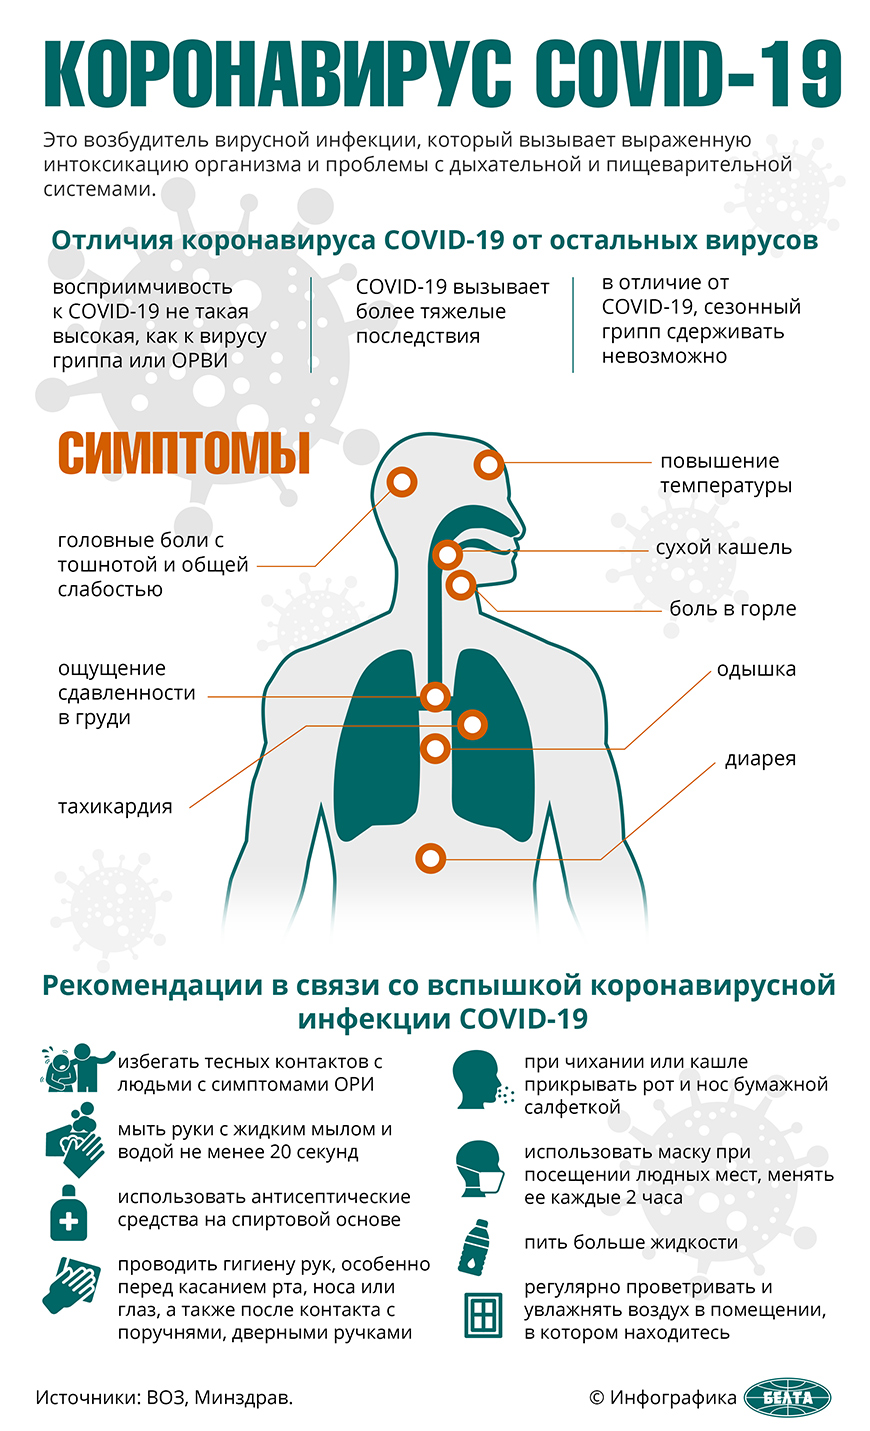 В Беларуси число излеченных от коронавирусной инфекции увеличилось до трех человек